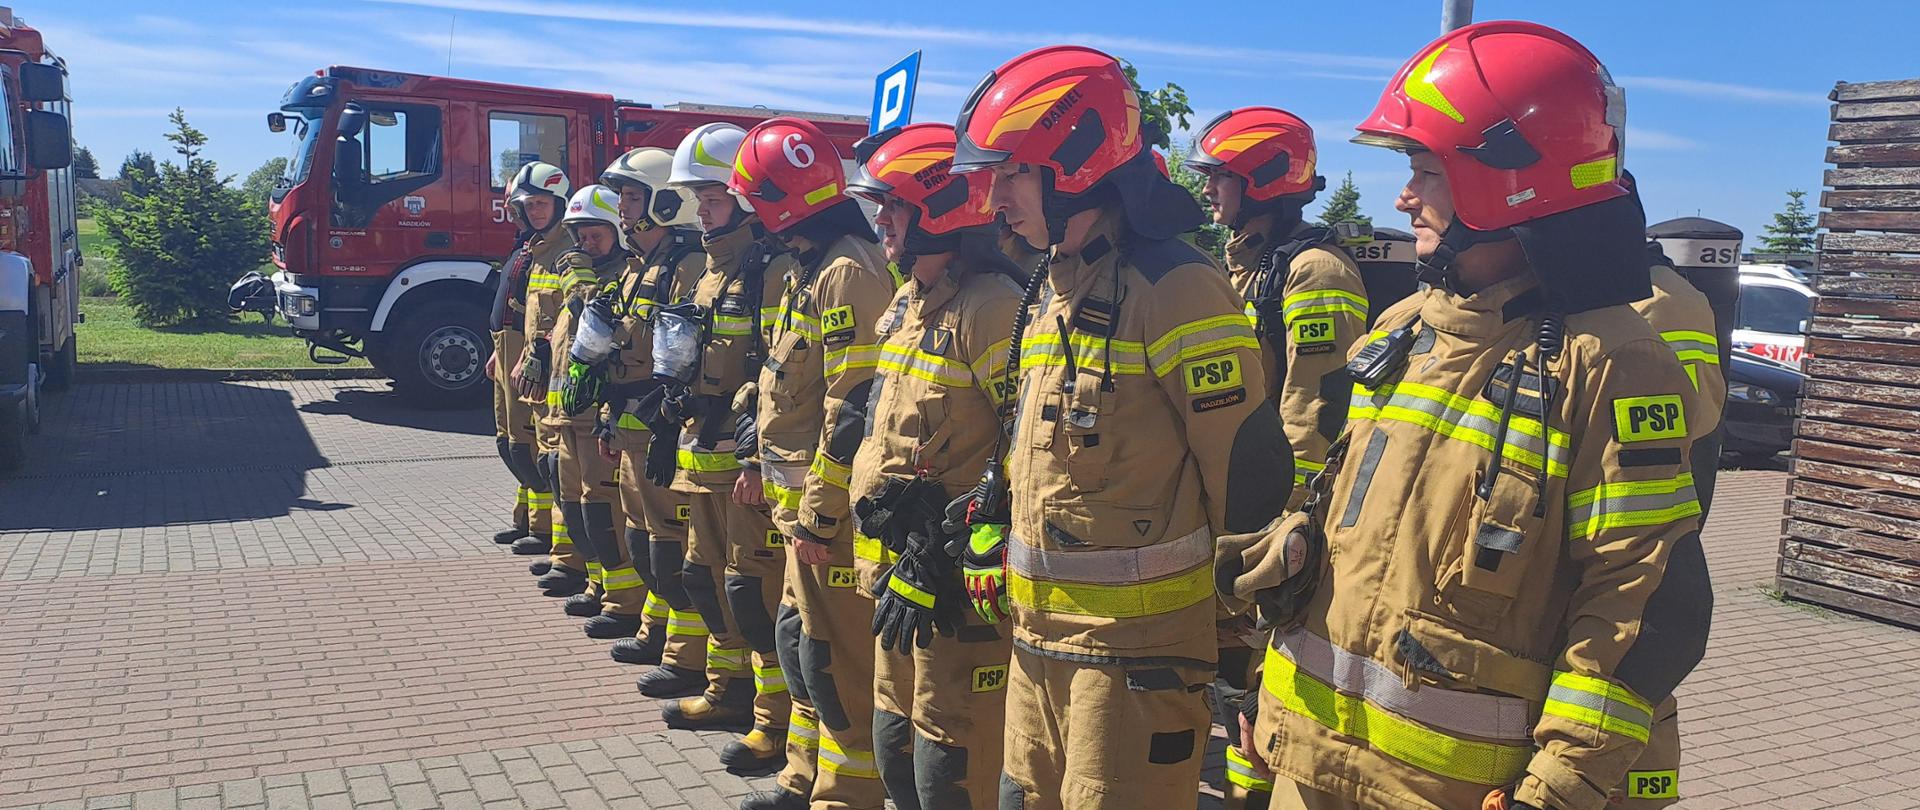 Zdjęcie przedstawia strażaków Państwowej Straży Pożarnej oraz strażaków Ochotniczych Straży Pożarnych ubranych w ubrania specjalne koloru piaskowego podczas odprawy przez ćwiczeniami.